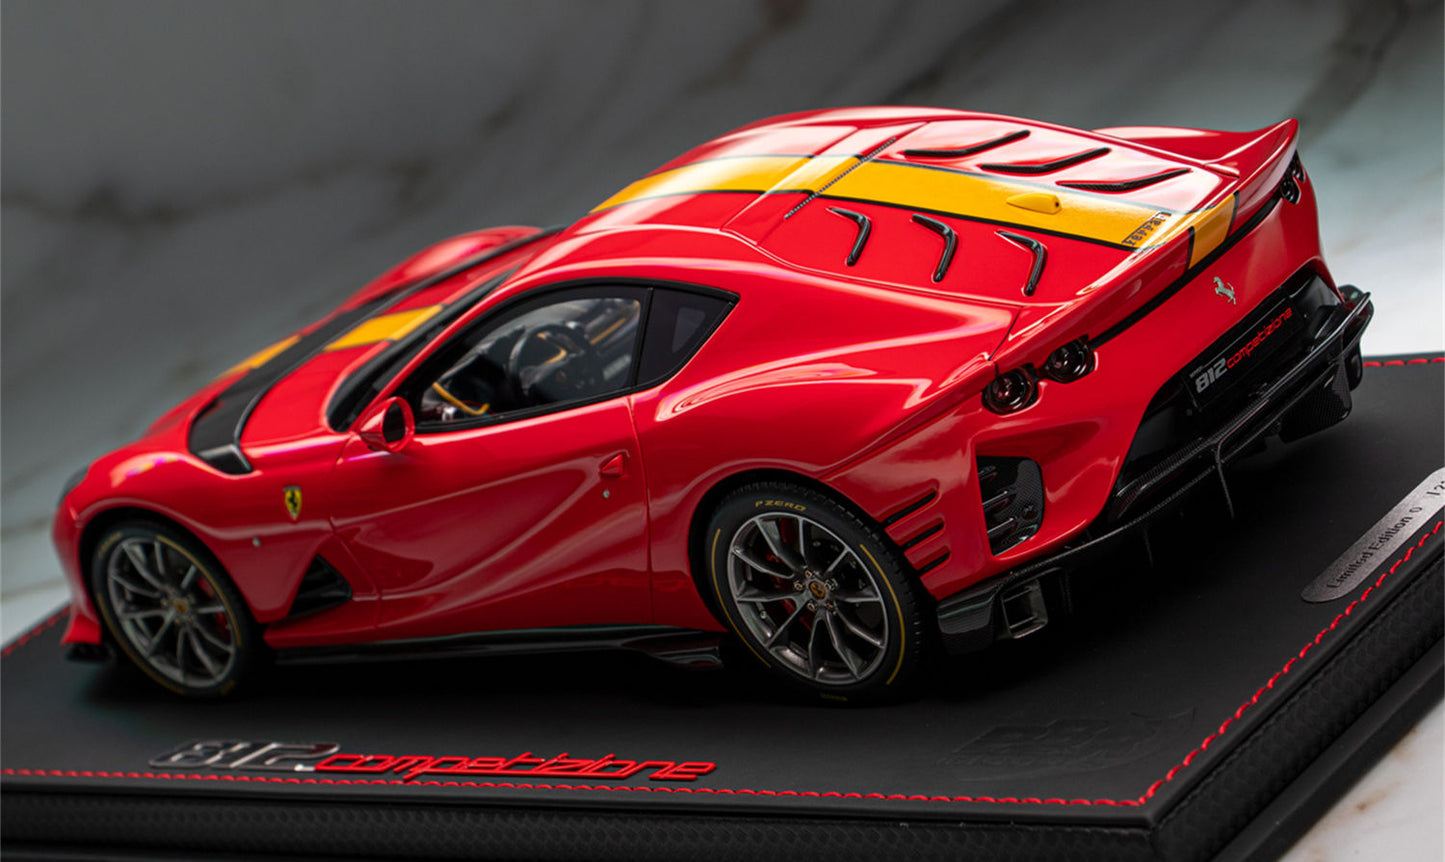 Ferrari 812 Competizione Supercar 1:18 Scale Resin Model Car